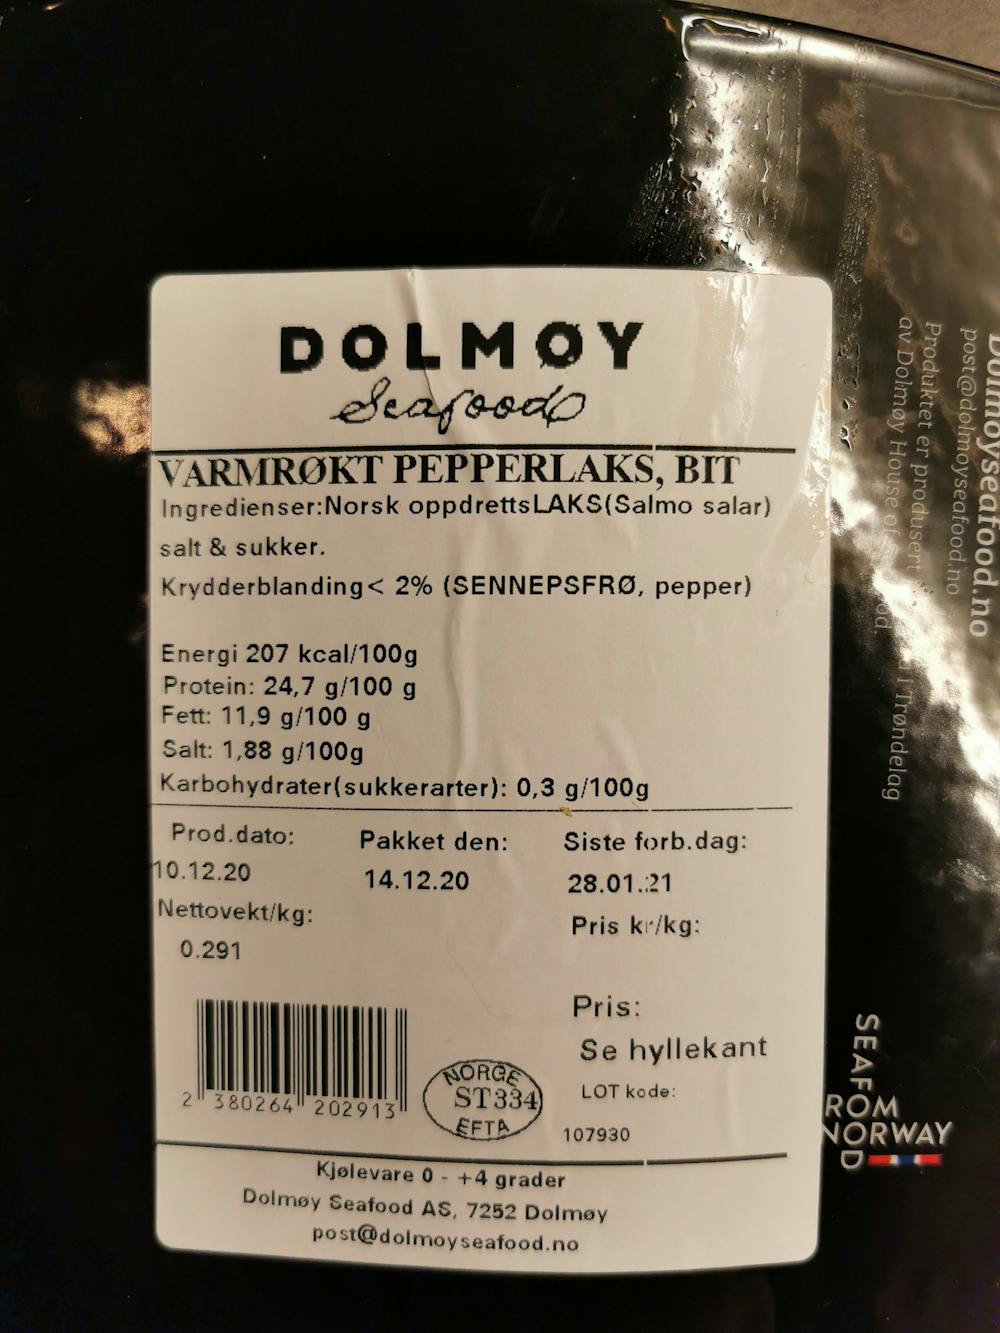 Ingredienslisten til Varmrøkt pepperlaks, Dolmøy seafood